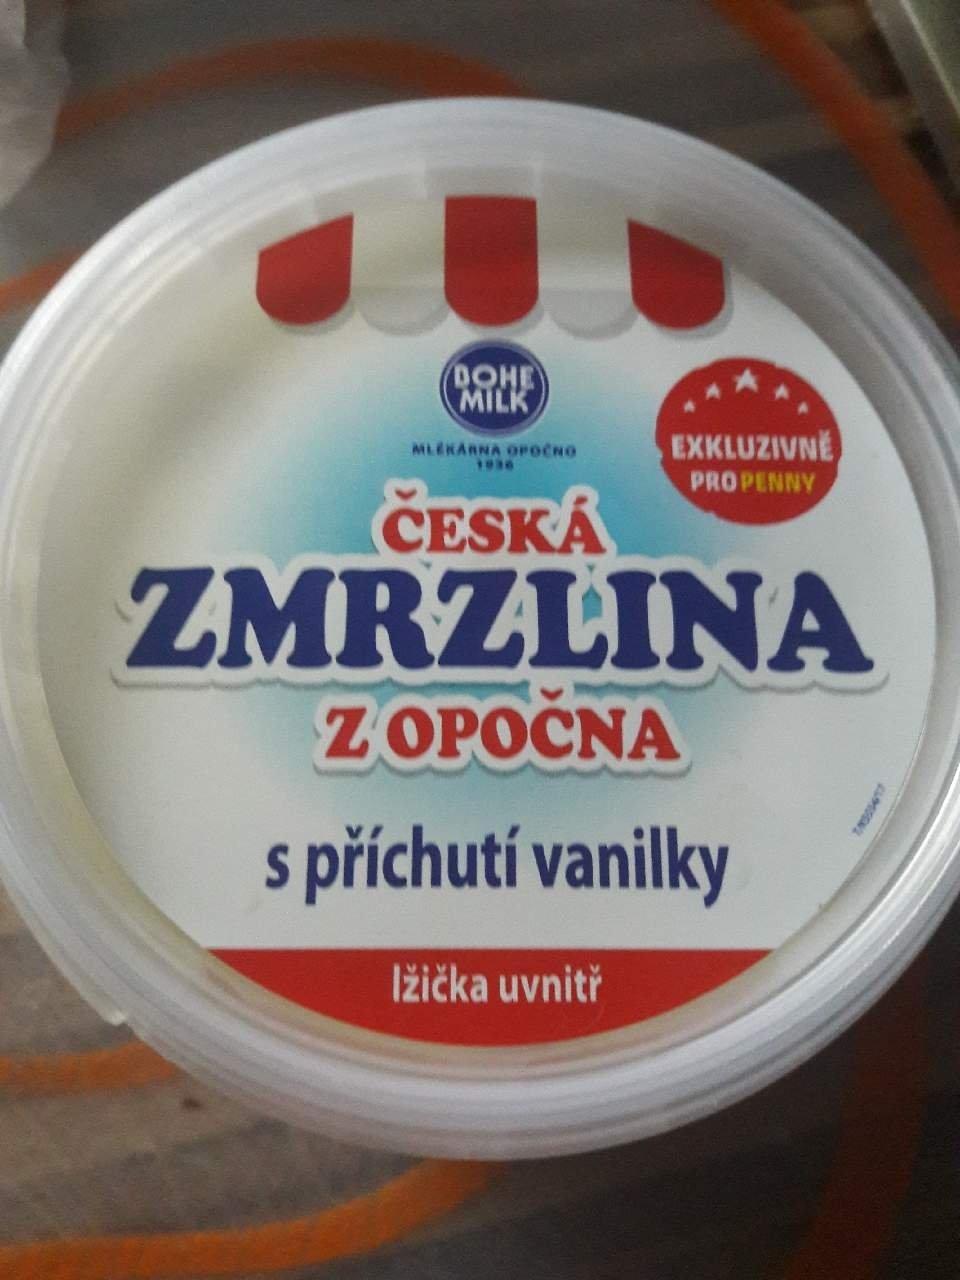 Fotografie - Česká zmrzlina z Opočna s příchutí vanilky Bohemilk